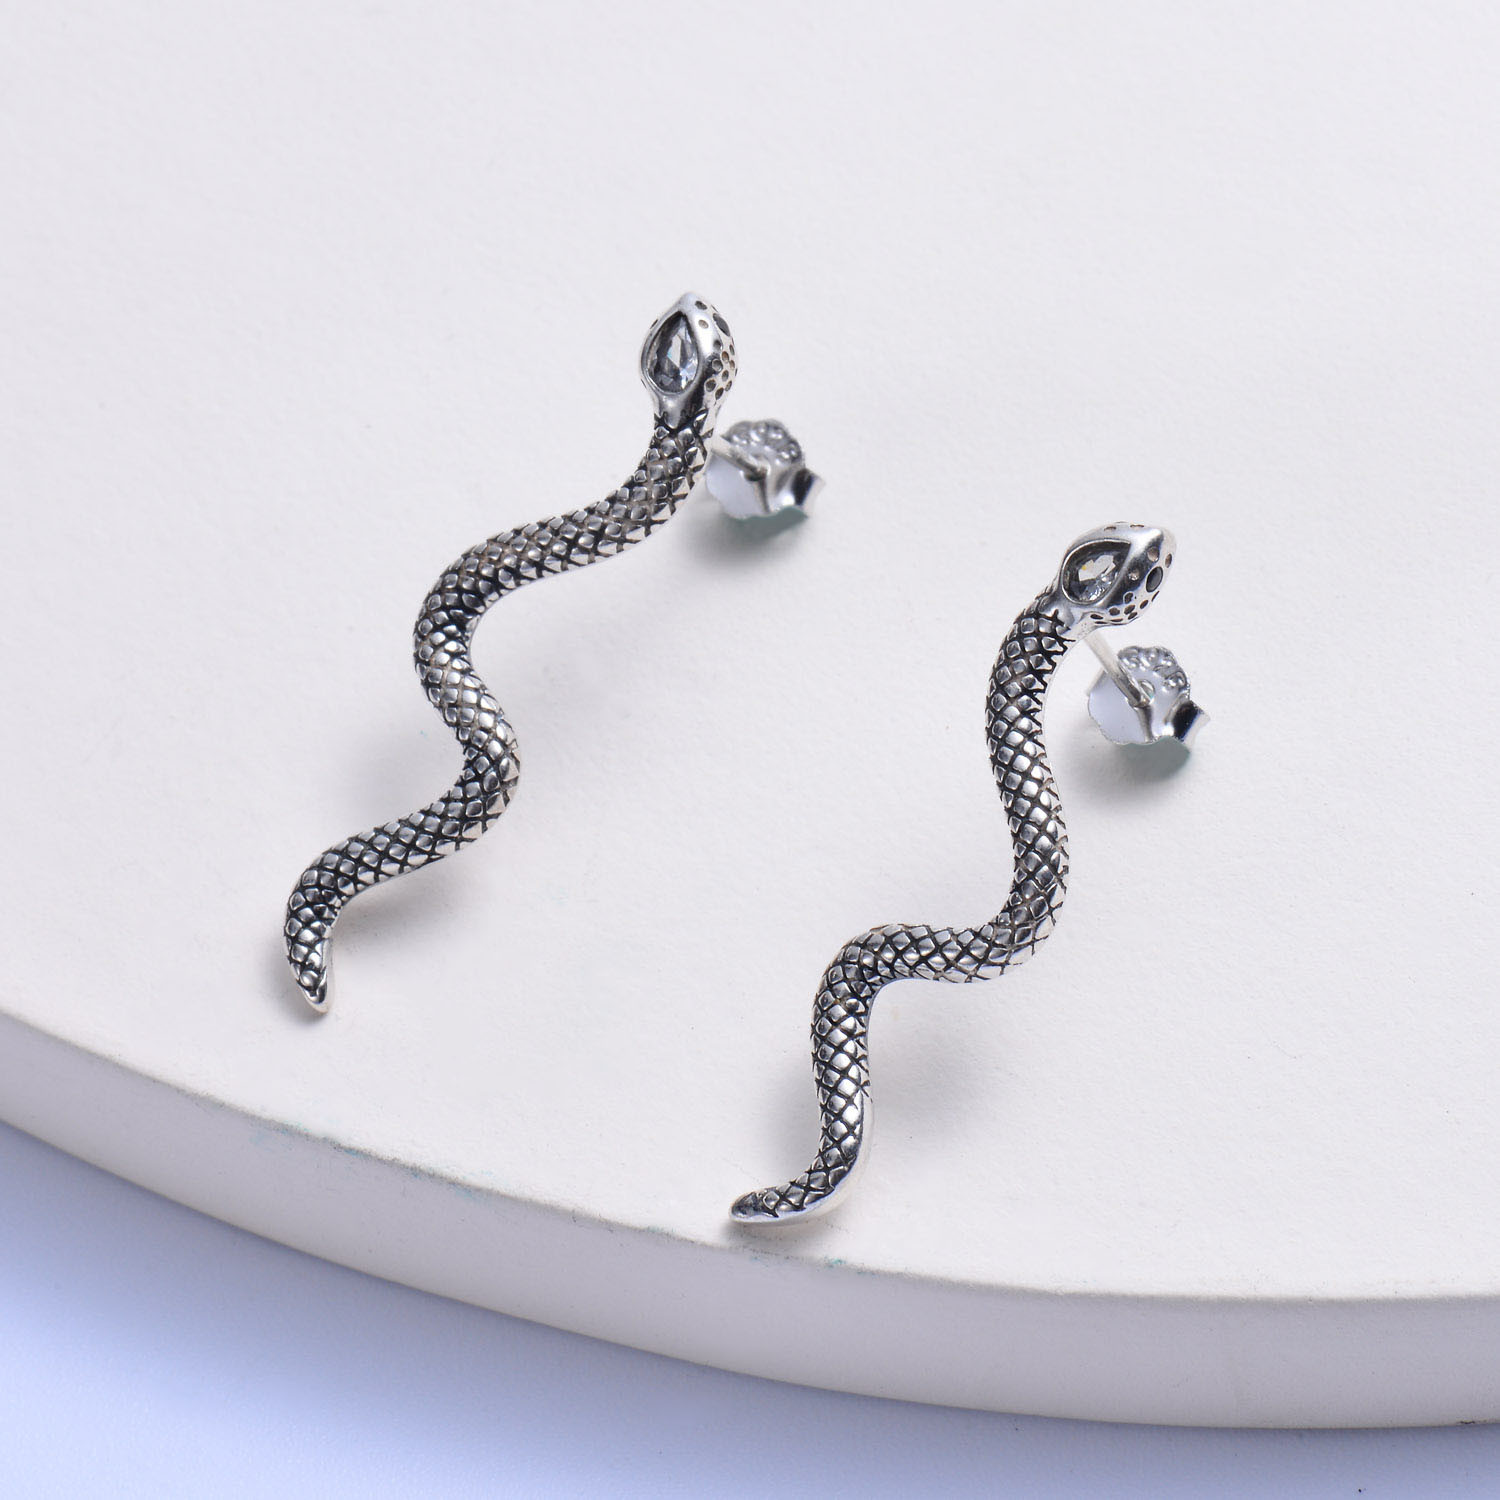 US$ 5.85 - aretes de plata 925 forma de serpiente de moda para mujer al por mayor - Joyas Acero Por Mayor